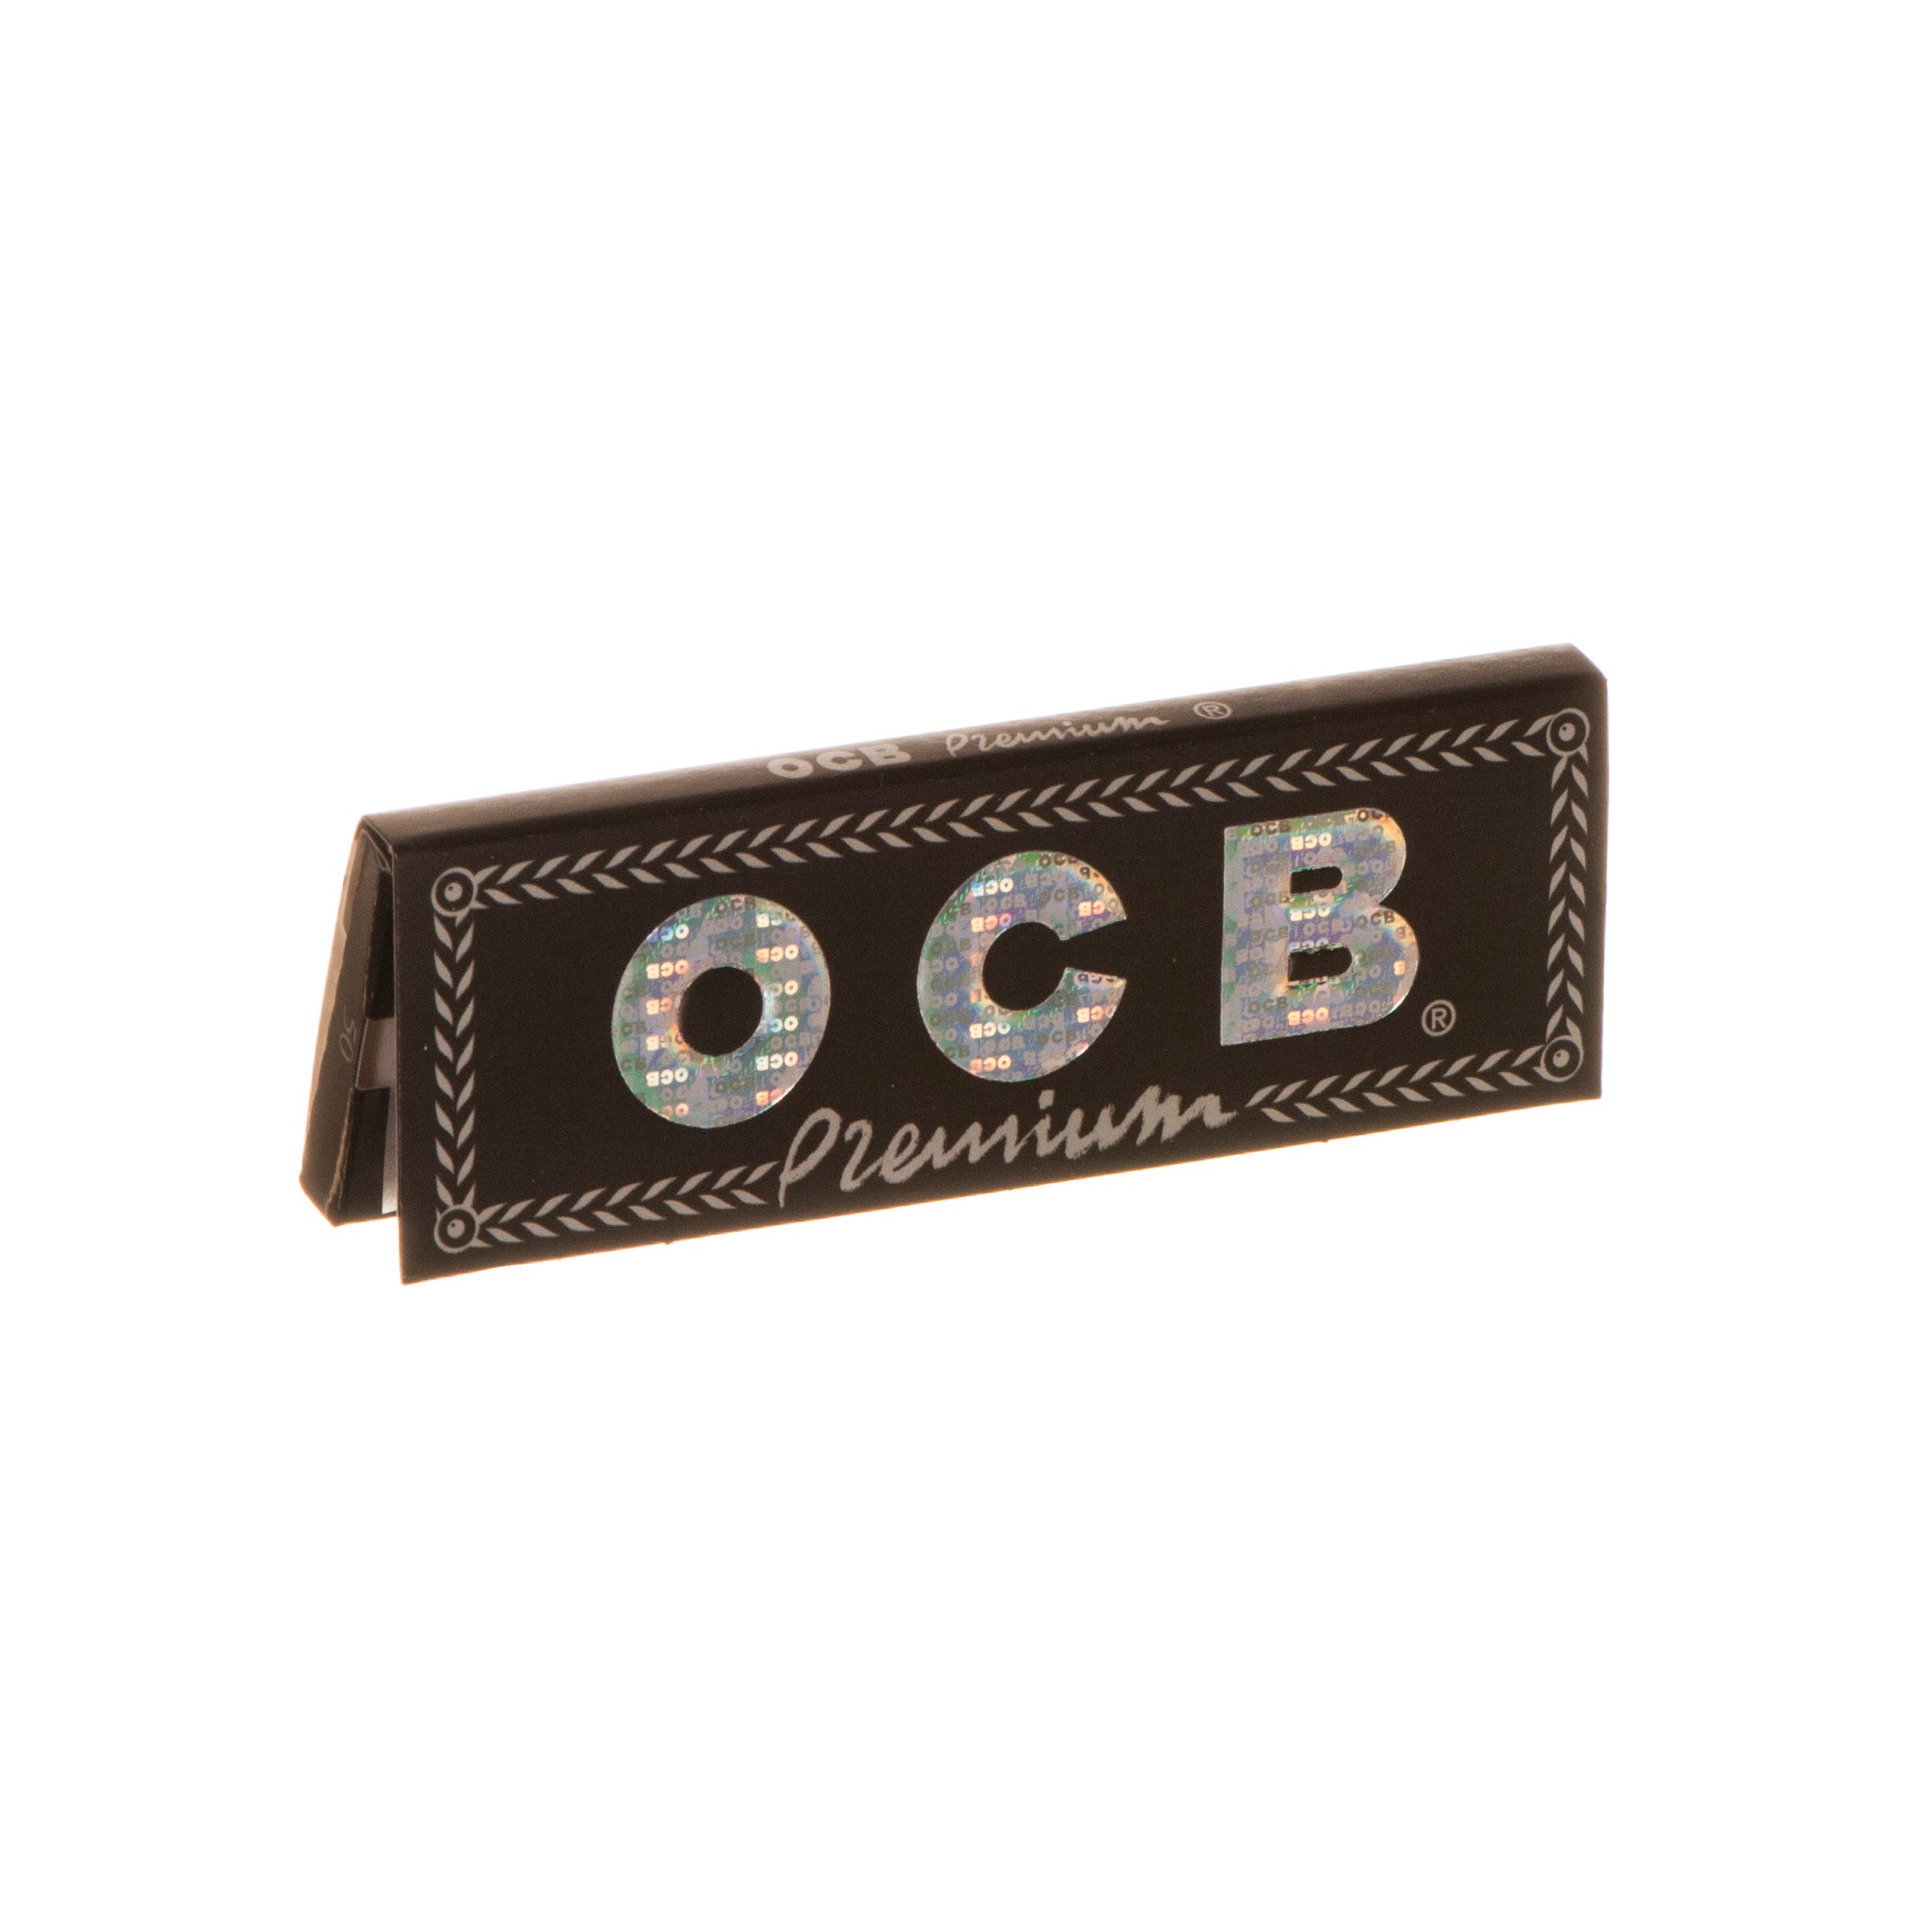 OCB Premium Black Rolling Papers